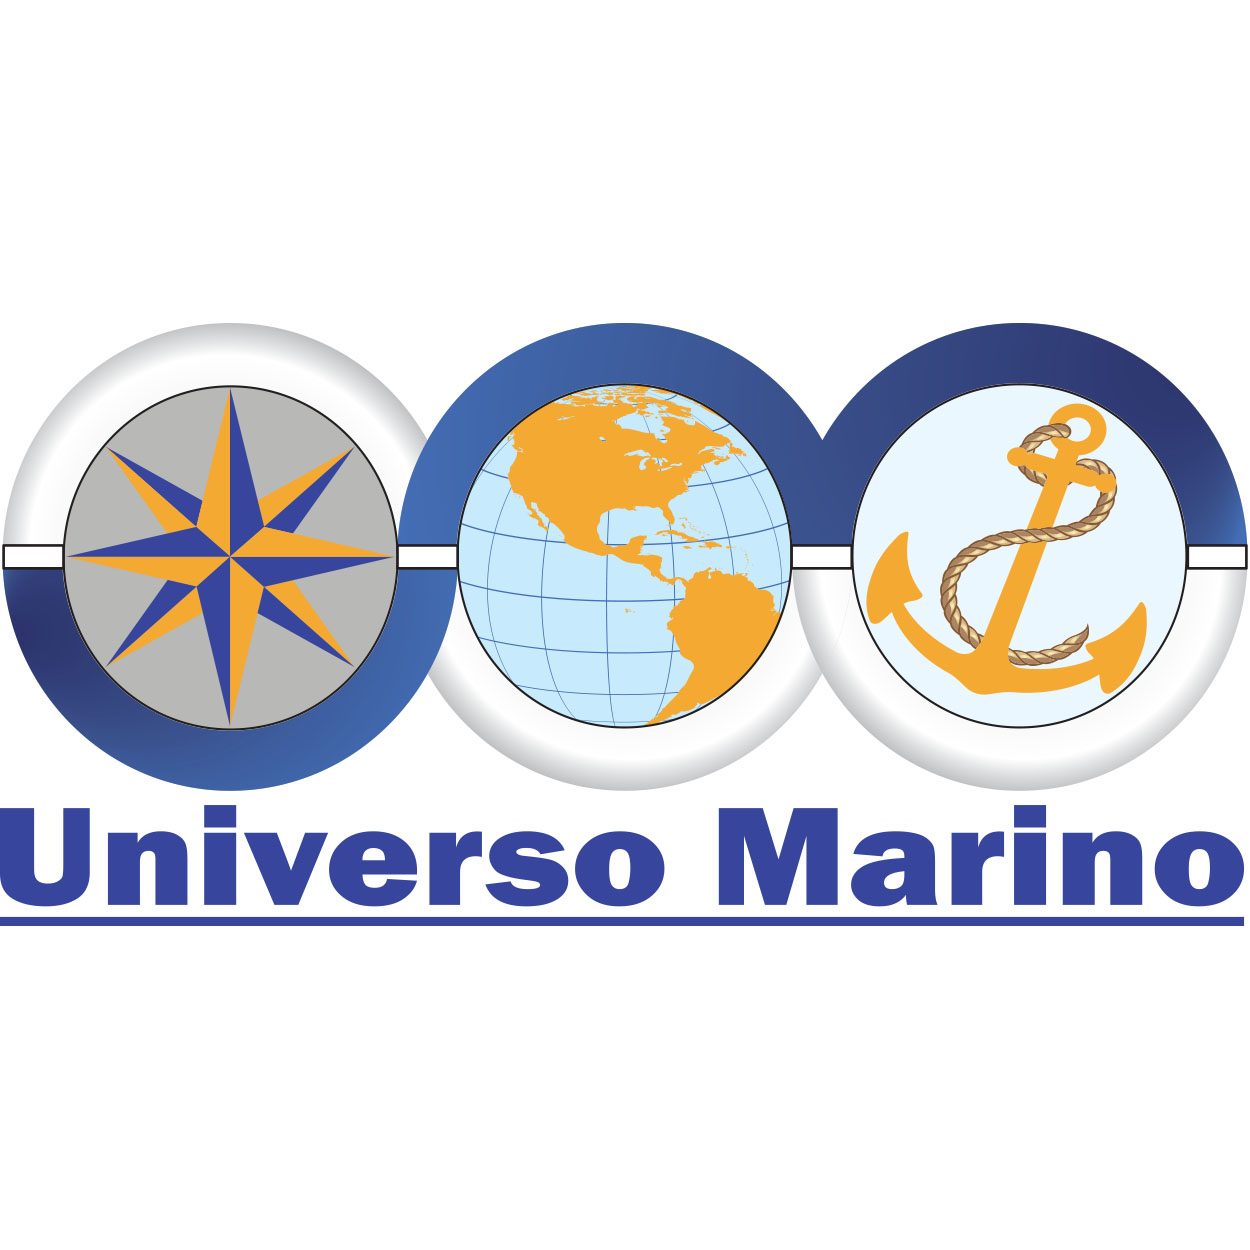 Universo Marino logo